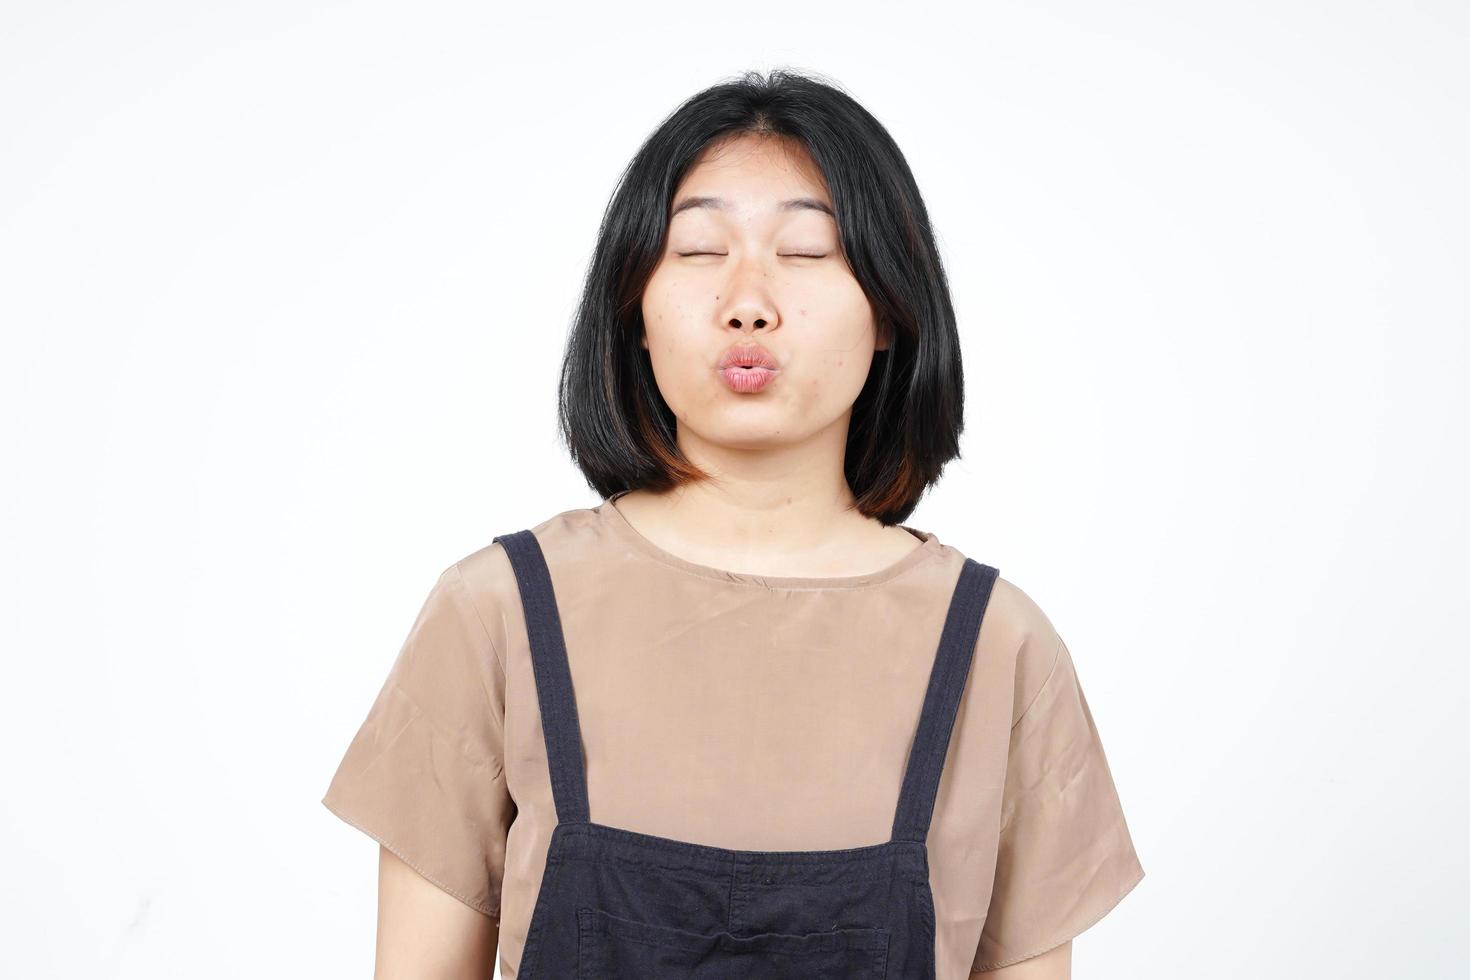 geschlossene augen und blasender kuss der schönen asiatischen frau lokalisiert auf weißem hintergrund foto